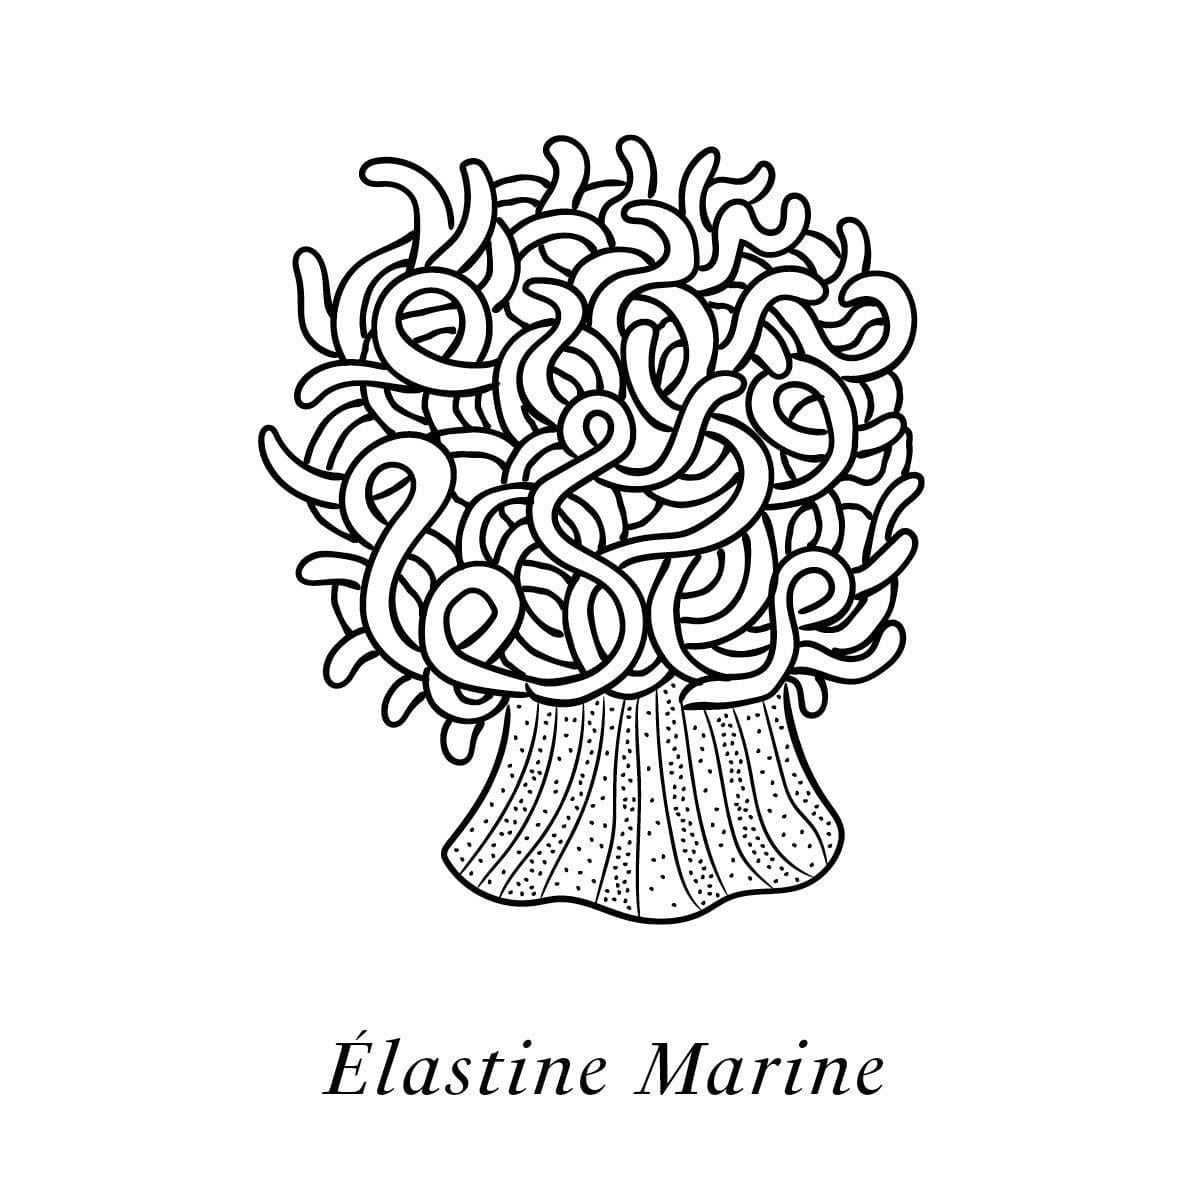 Illustration de l'élastine marine, un des actifs naturelle du soin haute couture Claudius N°1